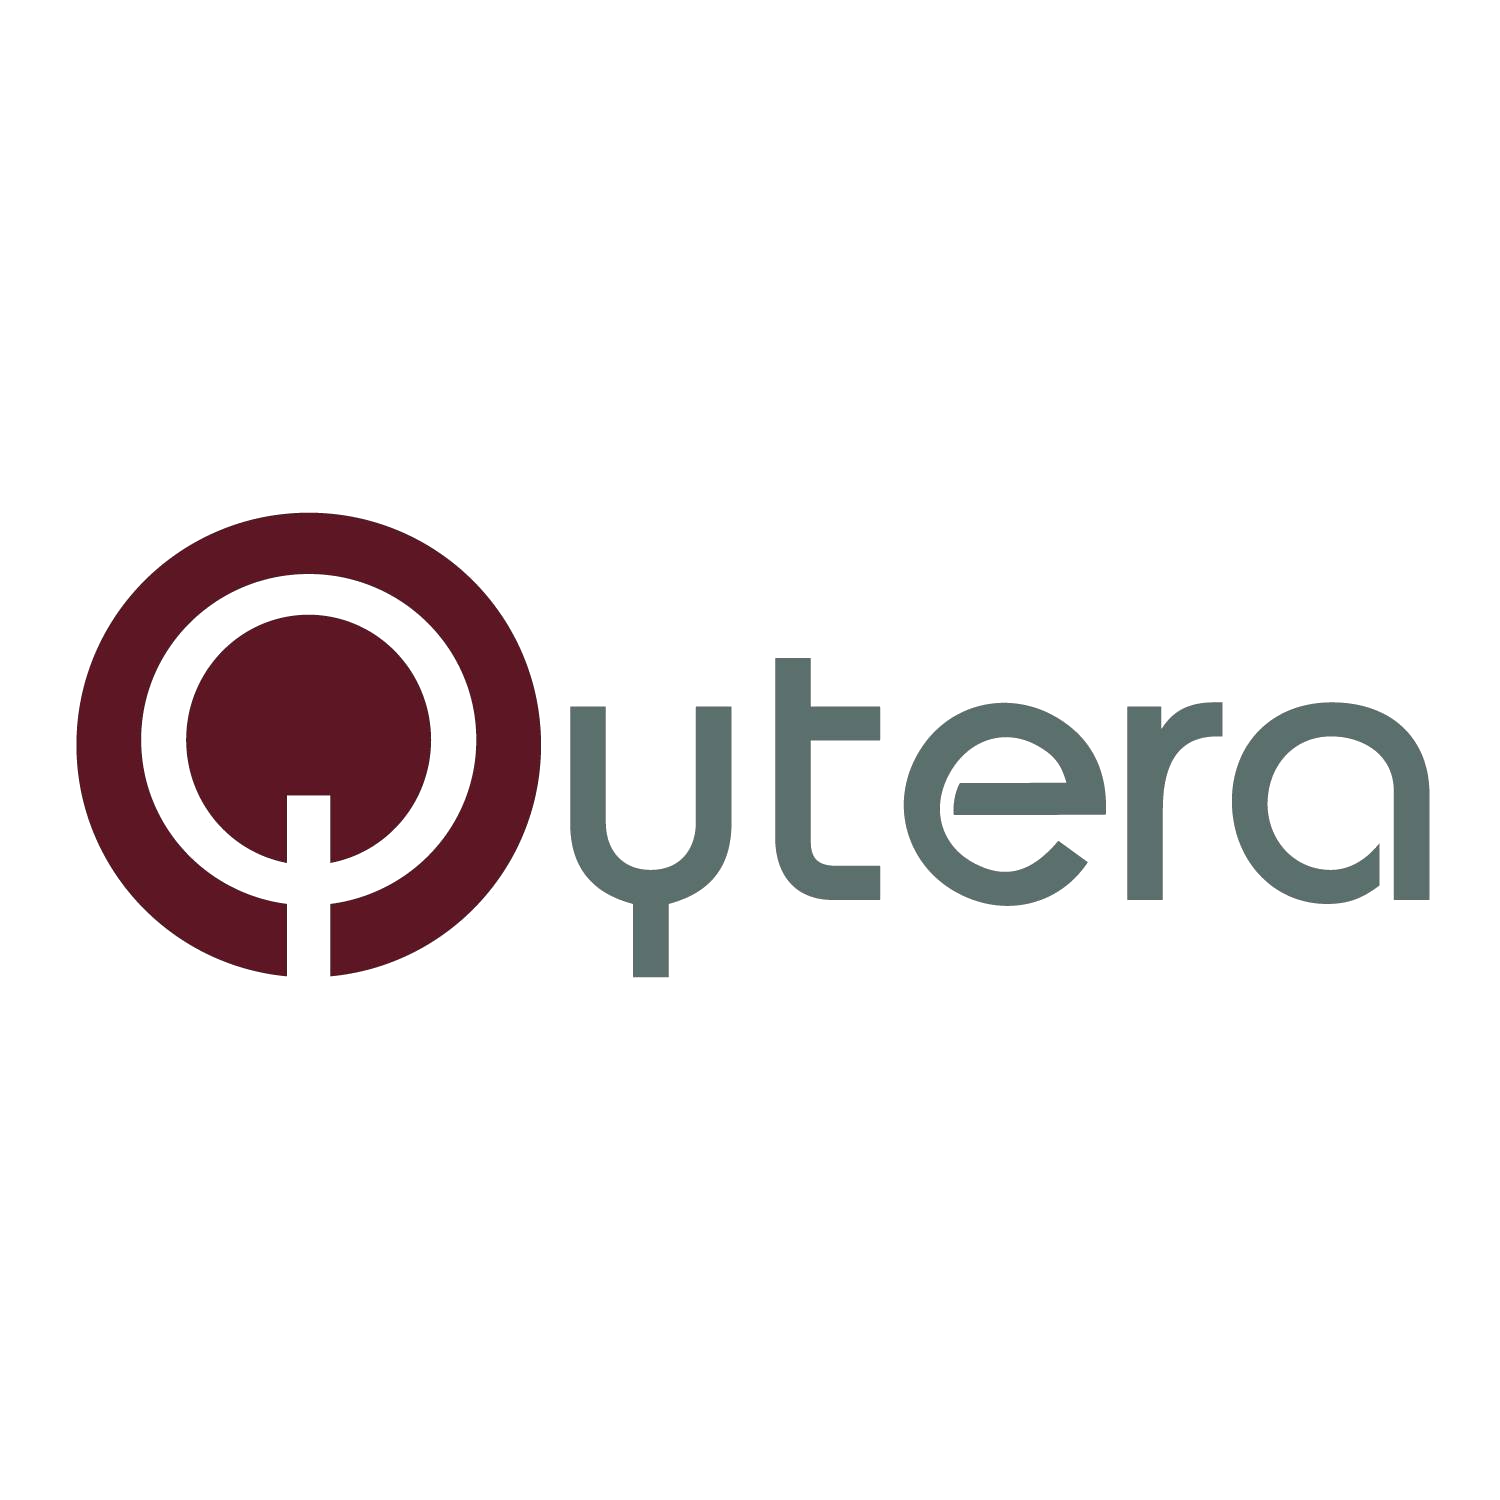 Qytera Software Testing Solutions GmbH logo